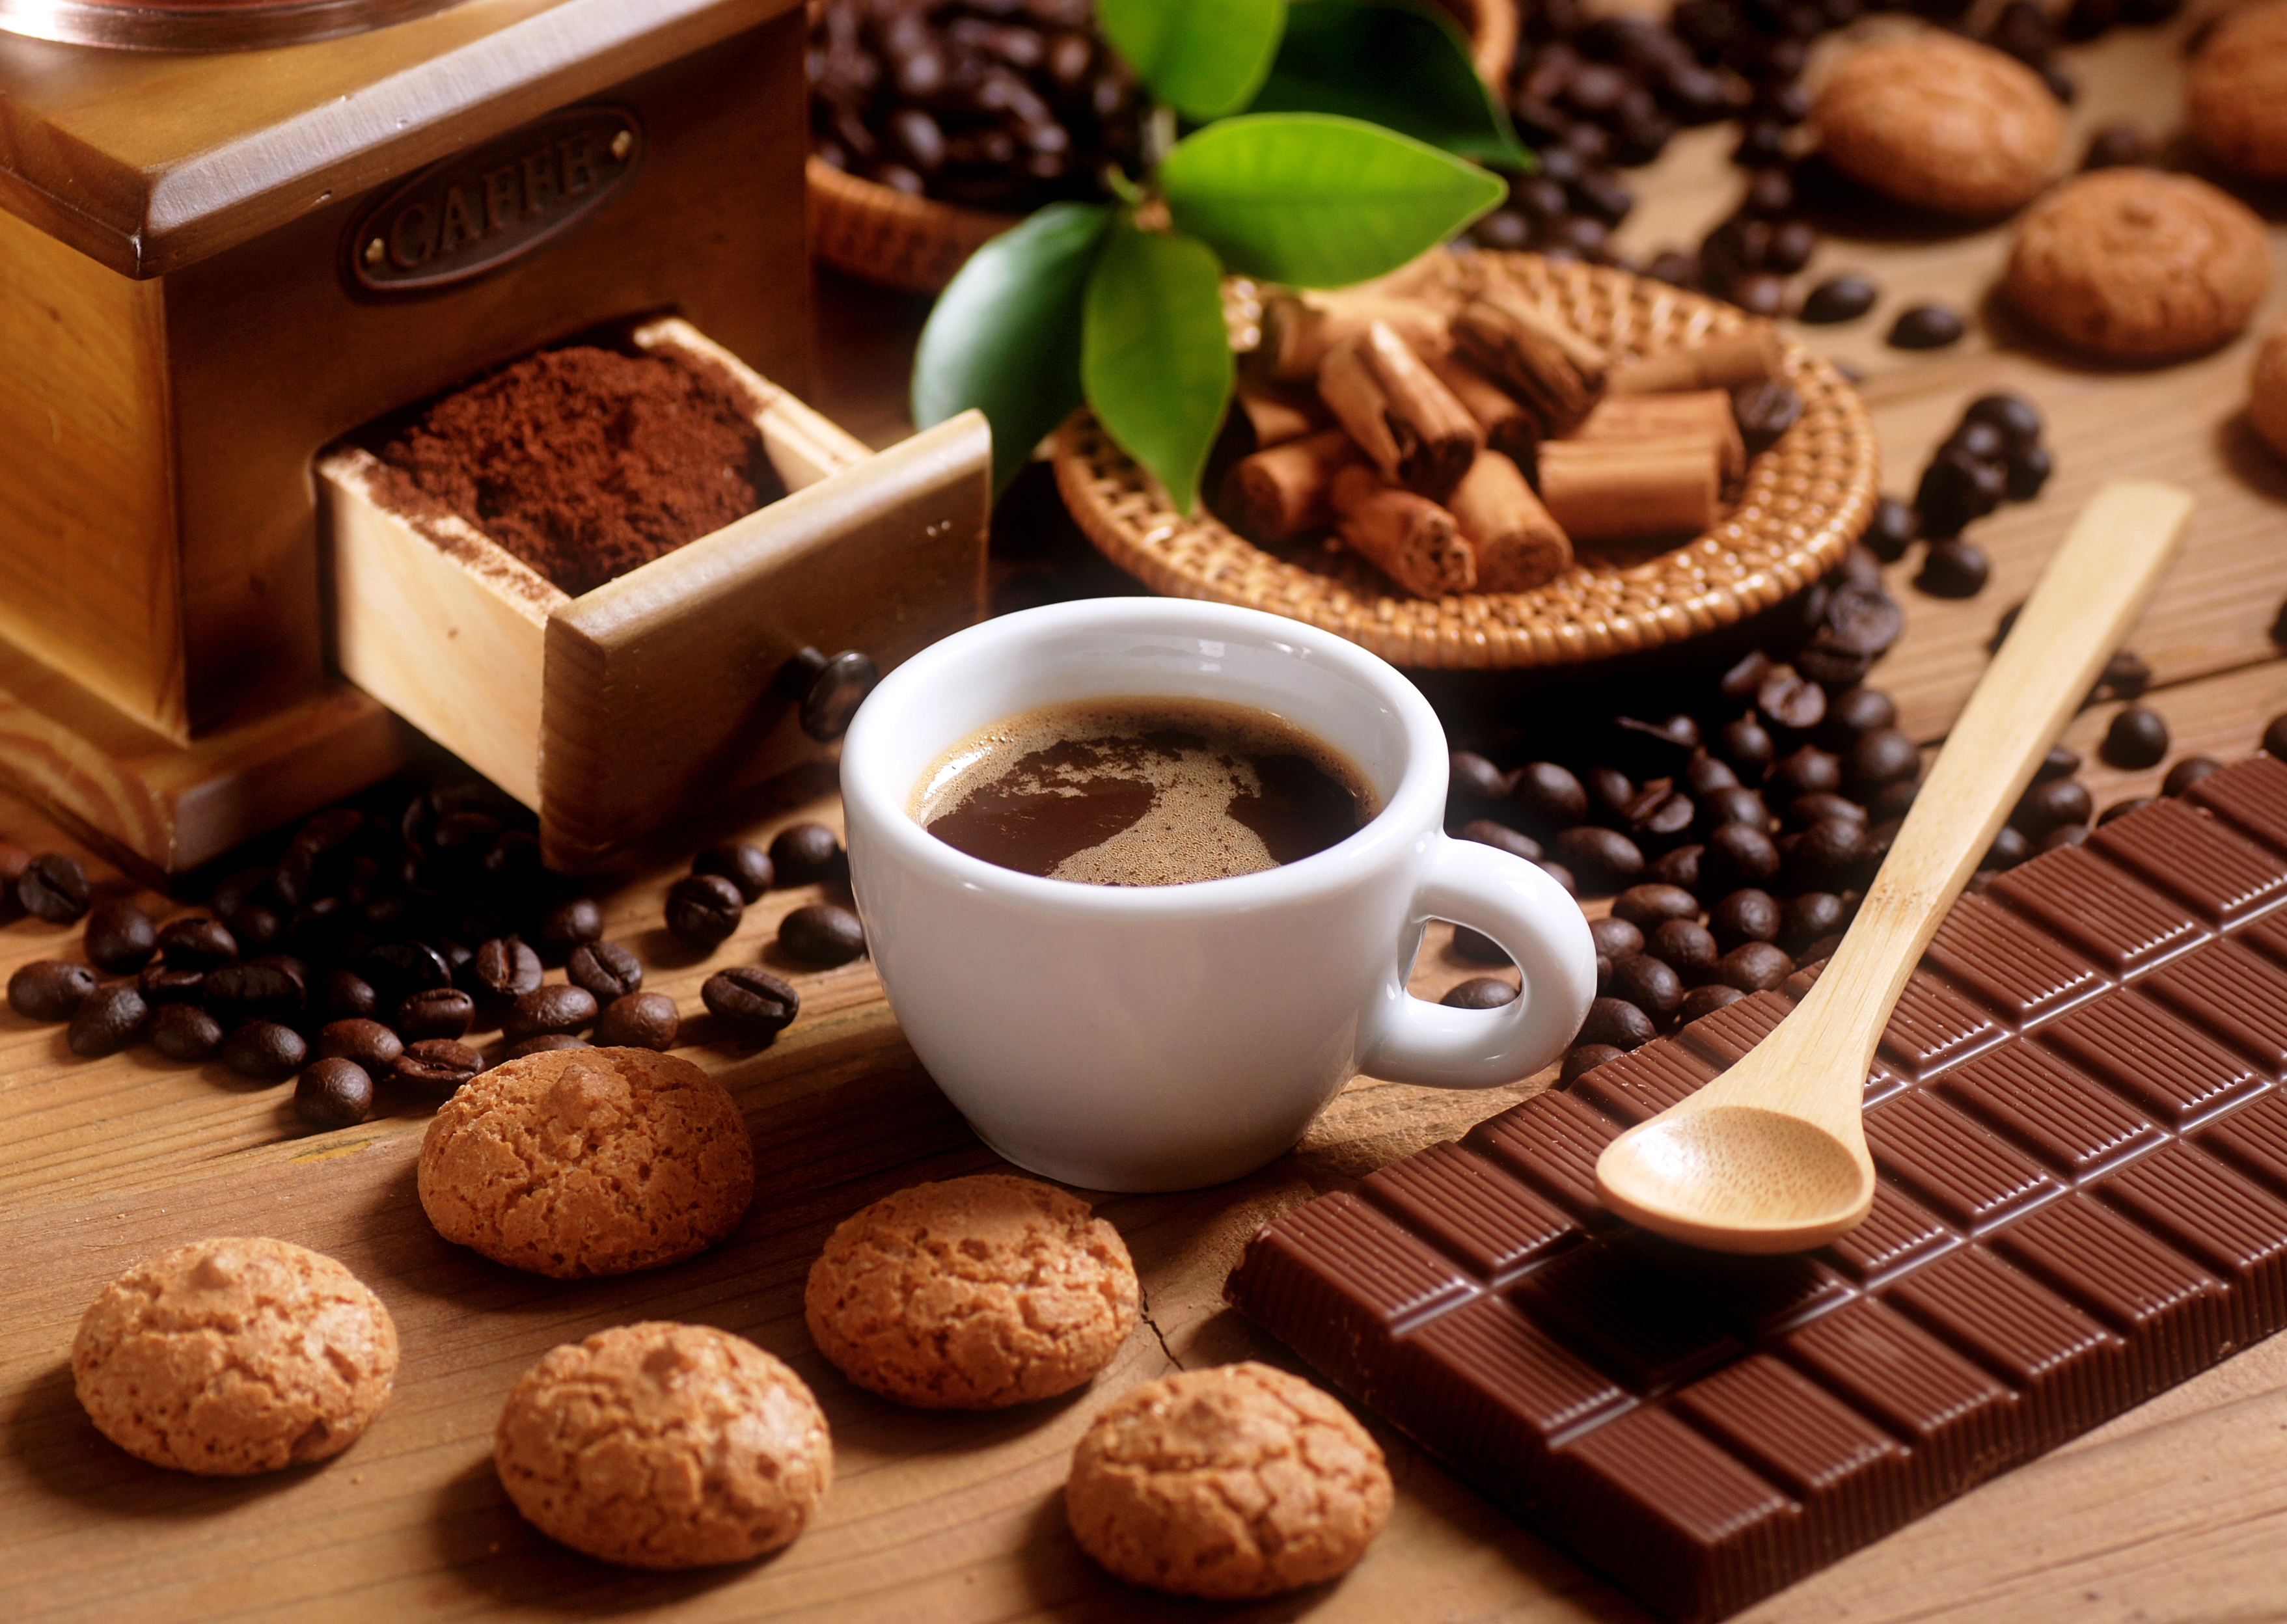 Чай и плитка шоколада. Красивый кофе. Кофе и шоколад. Заставка на рабочий стол кофе. Кофе с конфетами.